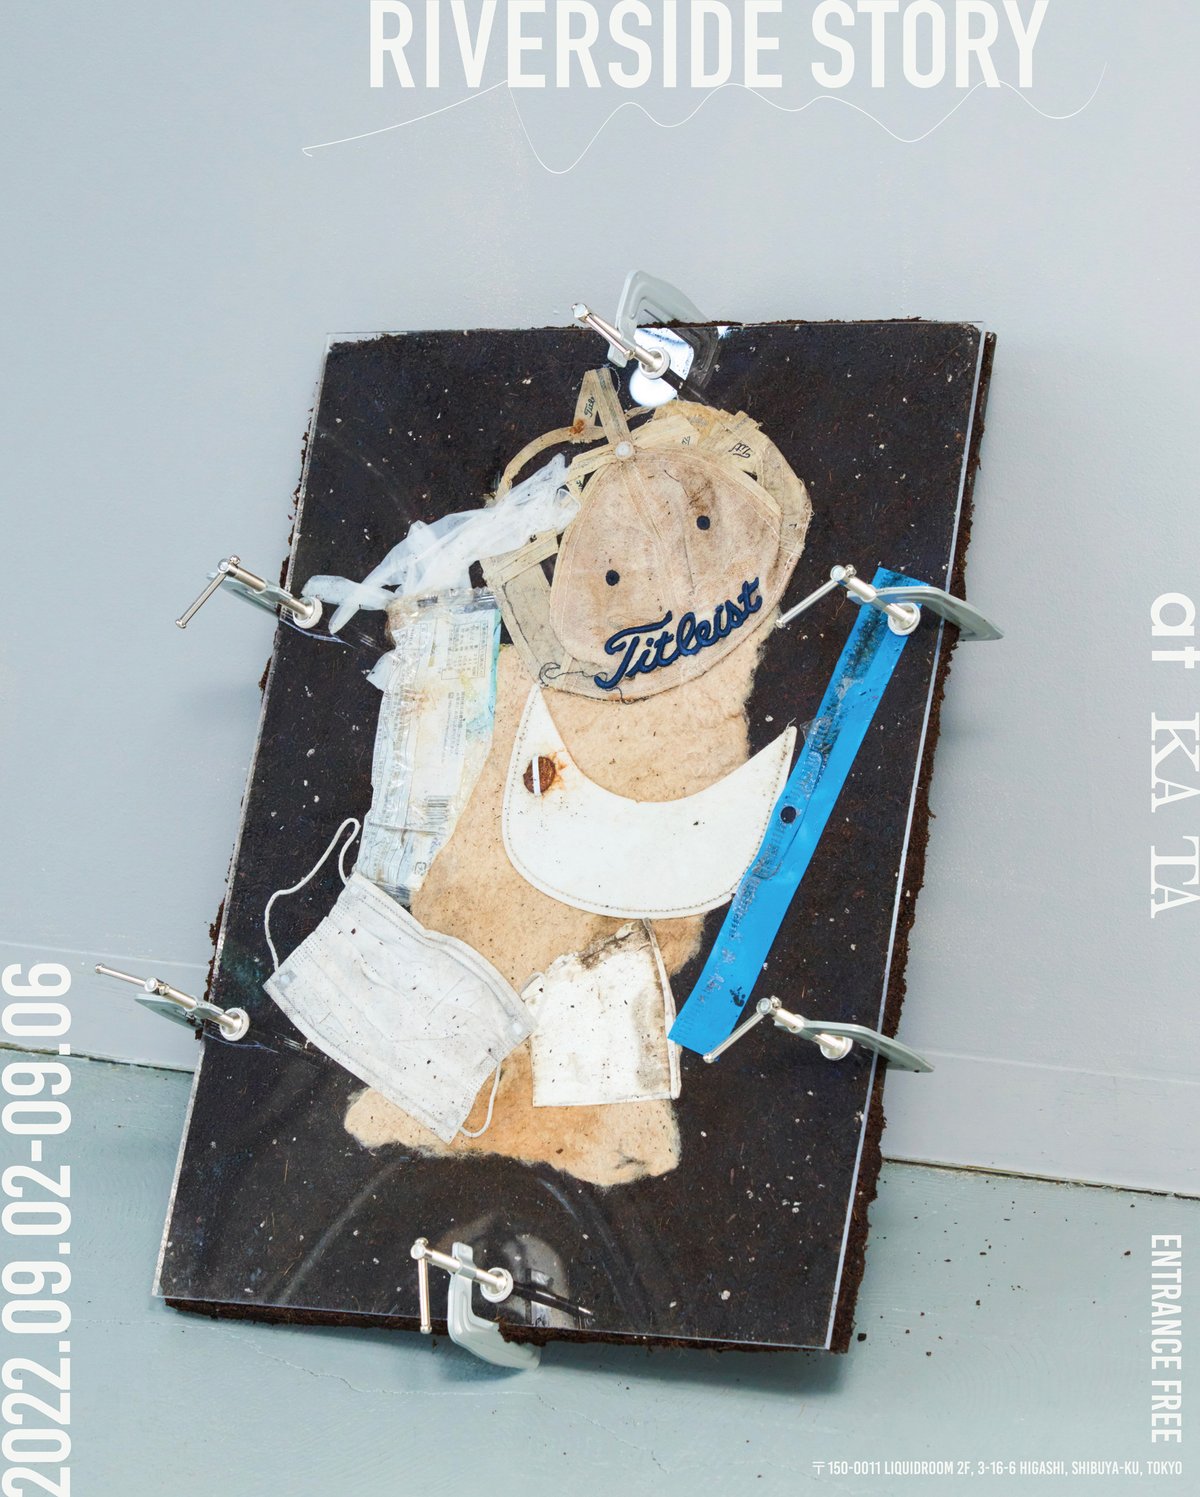 渋谷の川で拾ったゴミを衣装として制作するプロジェクト「リバーサイド ストーリーズ」の作品